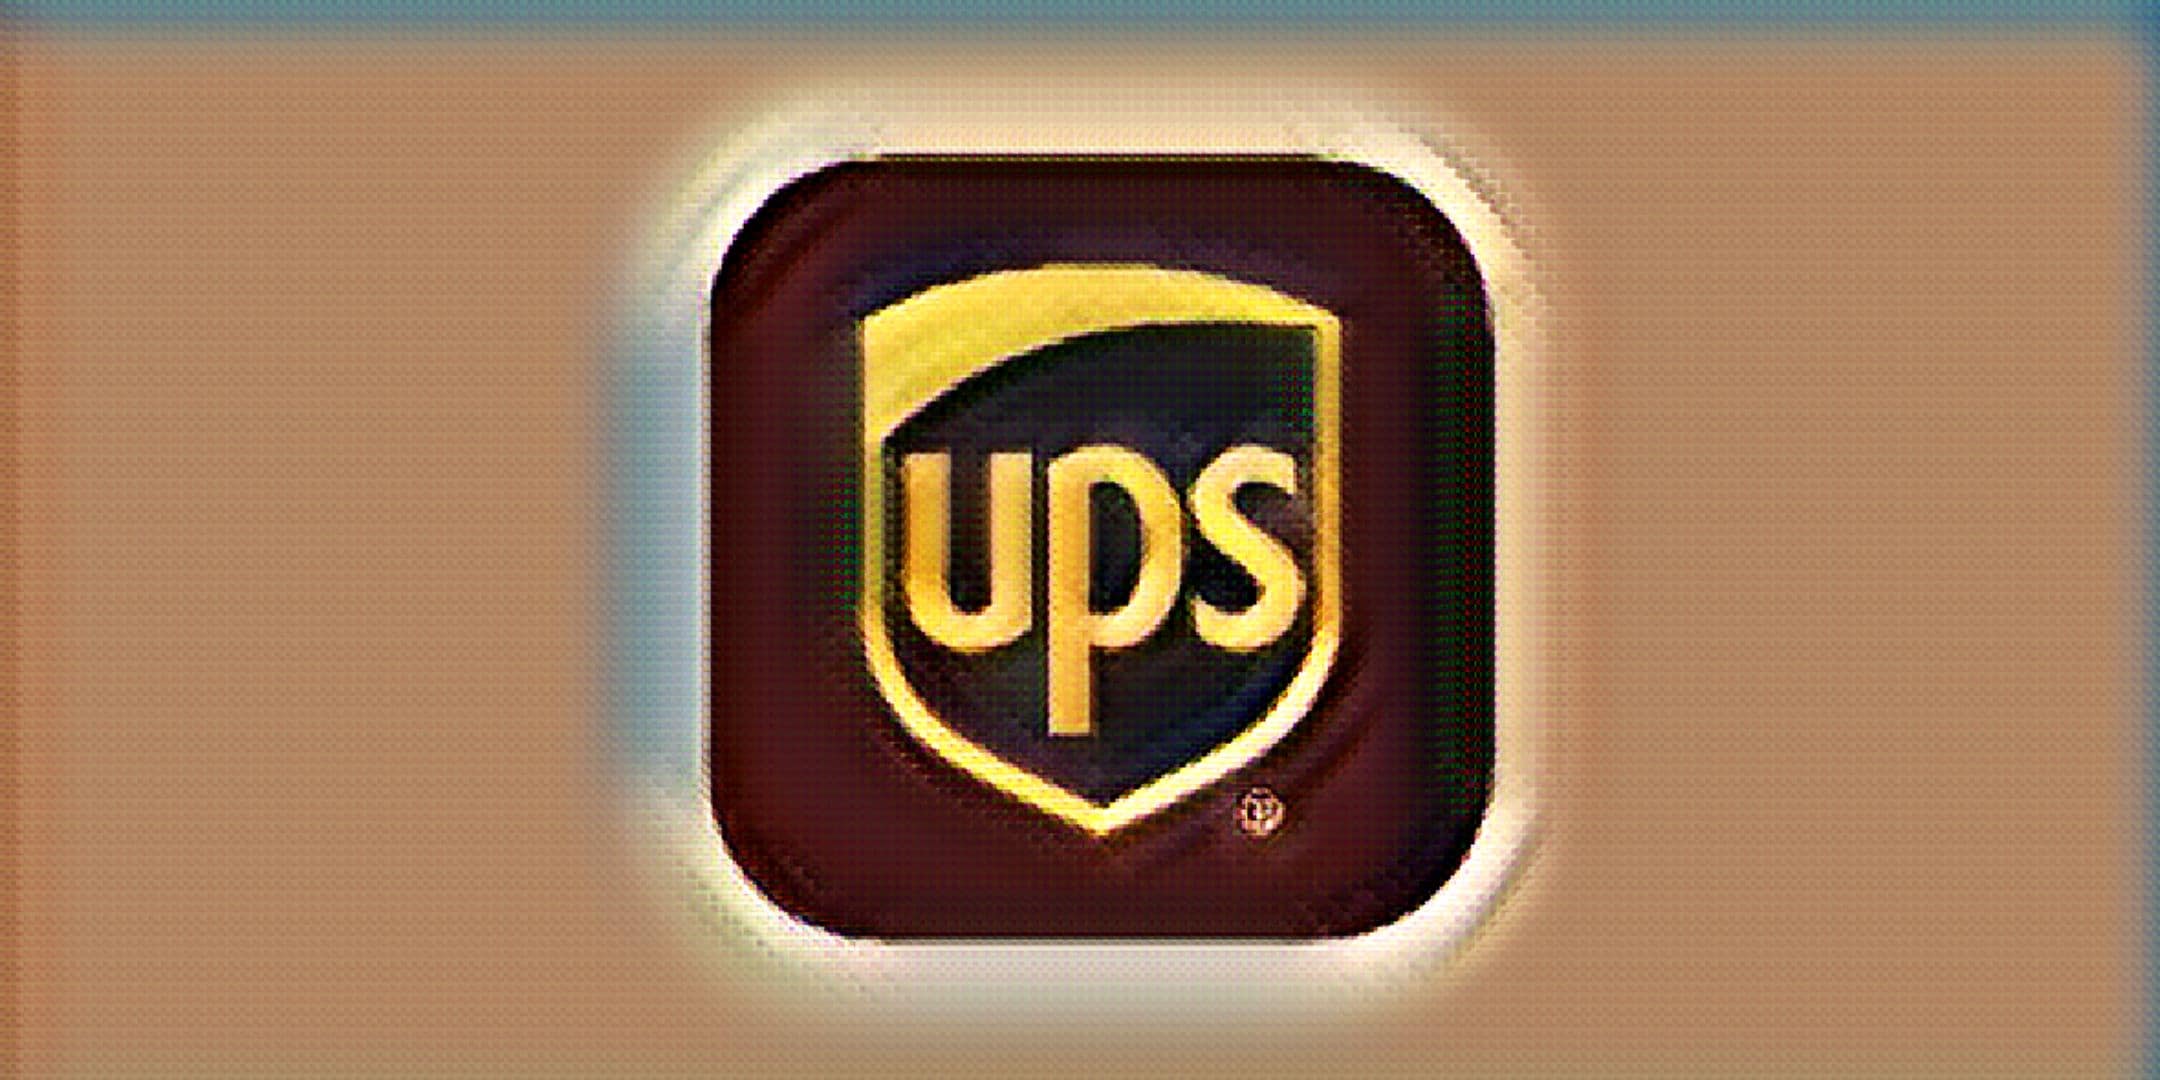 Does UPS Drug Test?